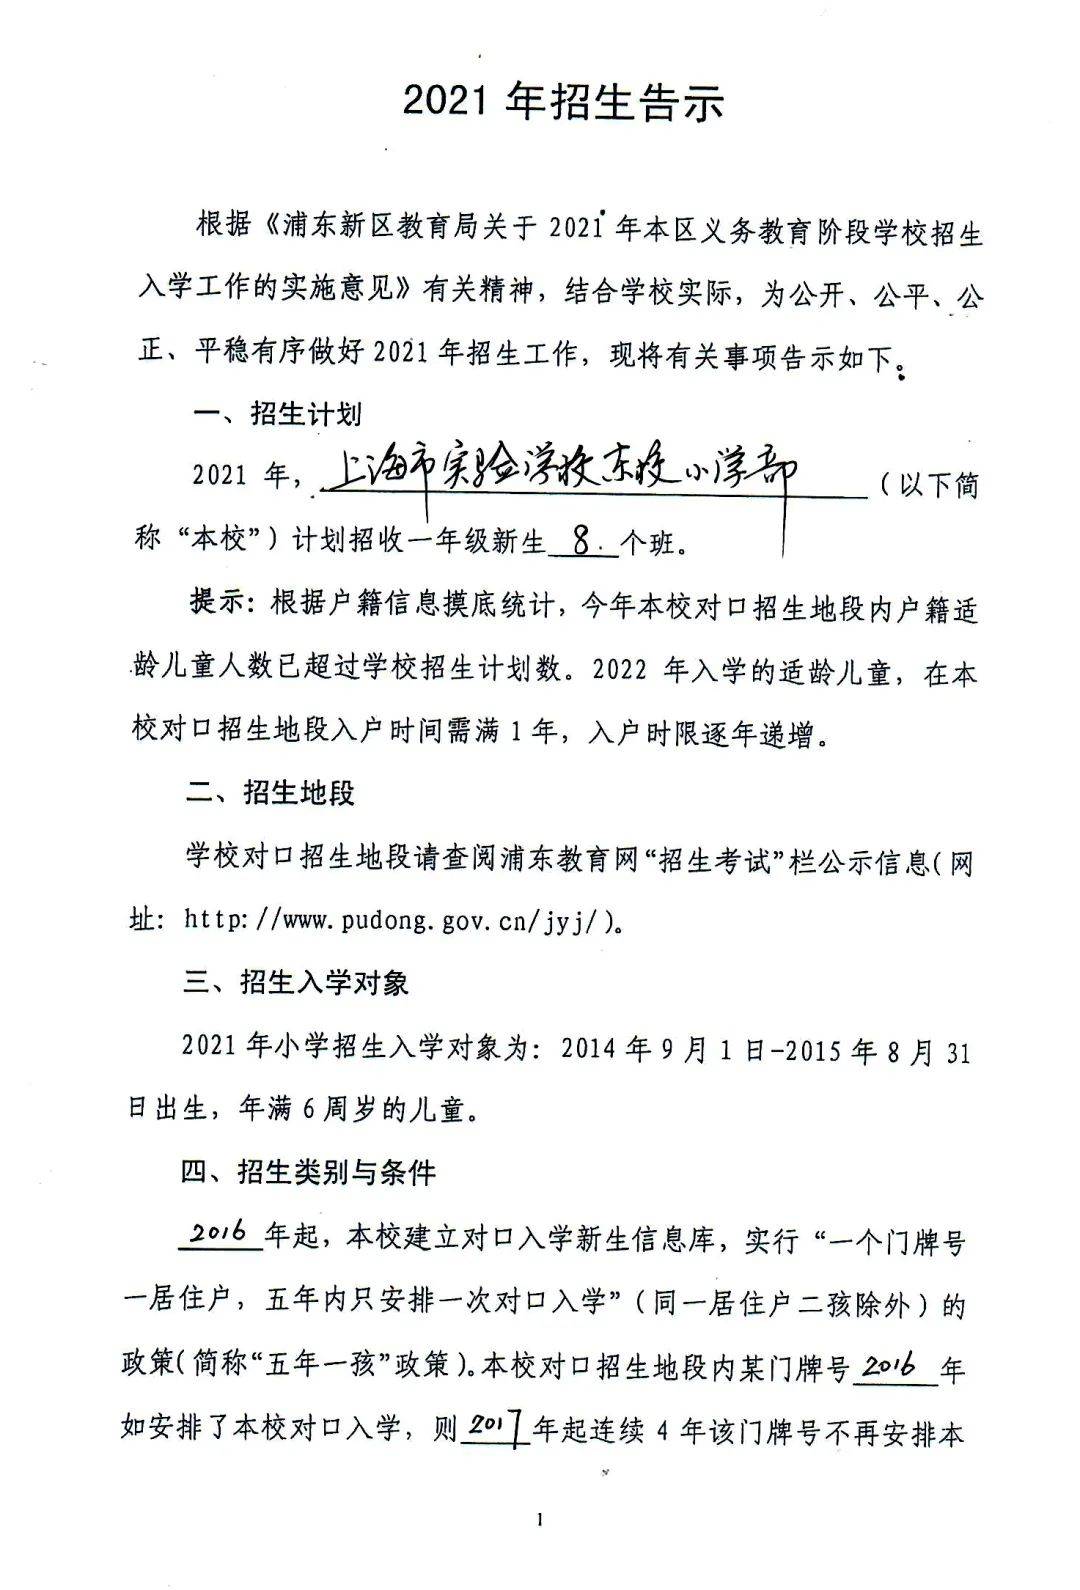 新嘉出国通知2021年上海这13小学发布超额预警快看有娃的目标学校没